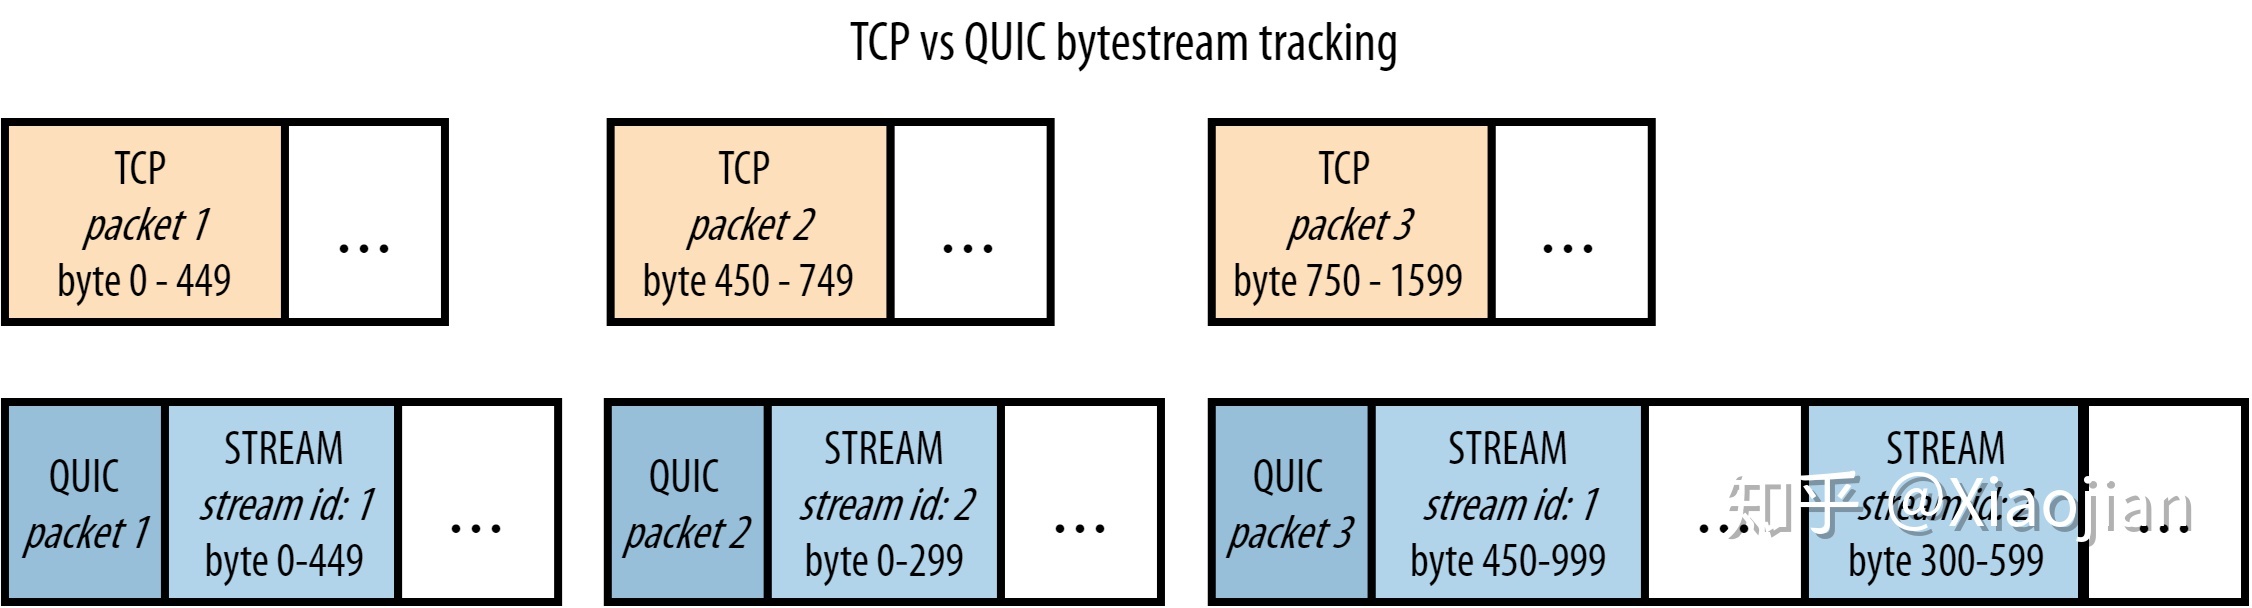 TCP_QUIC